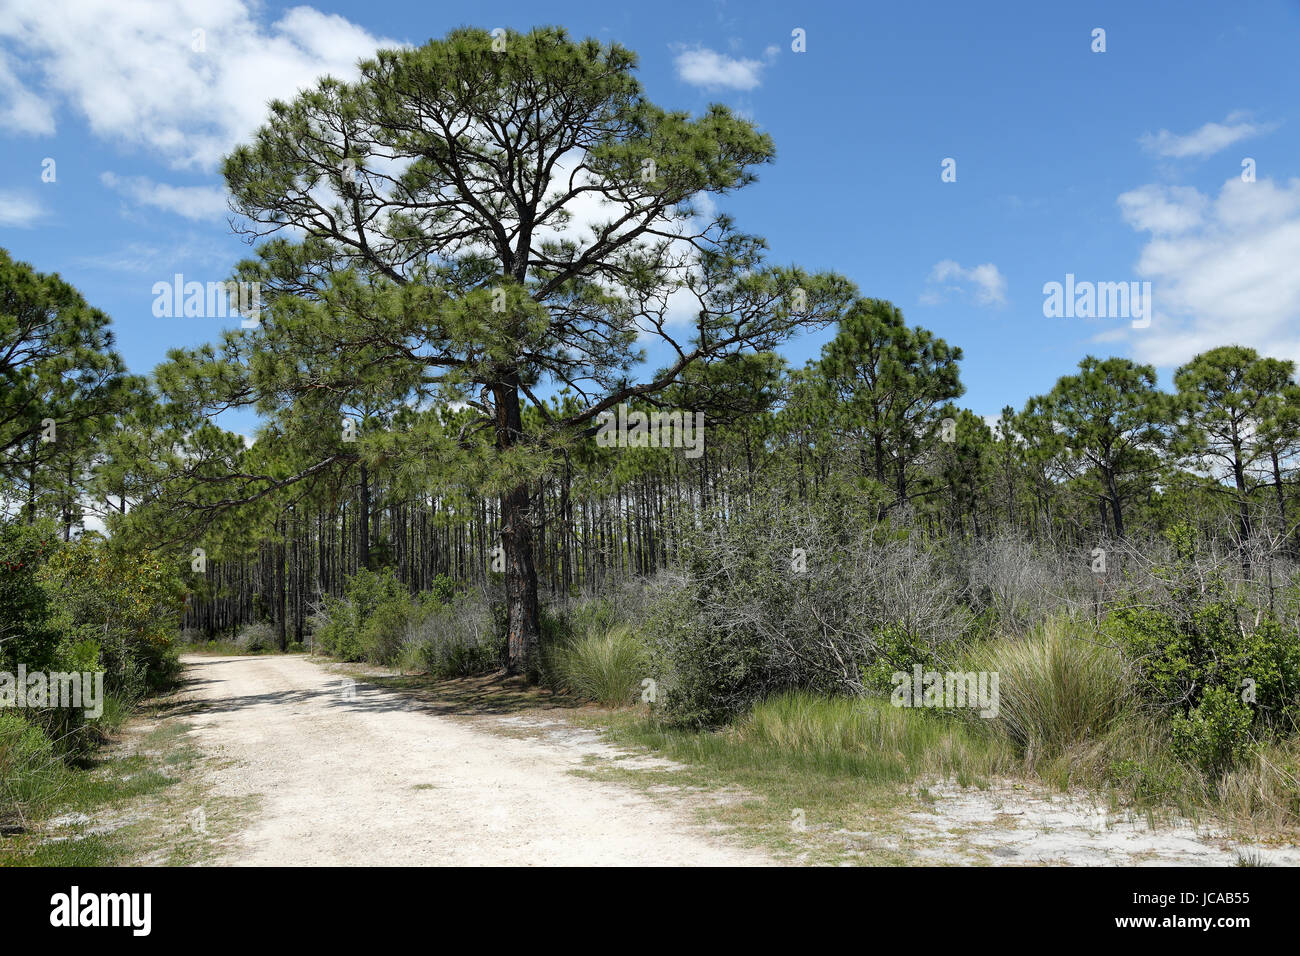 Majestic mature pine tree along a sandy path Stock Photo